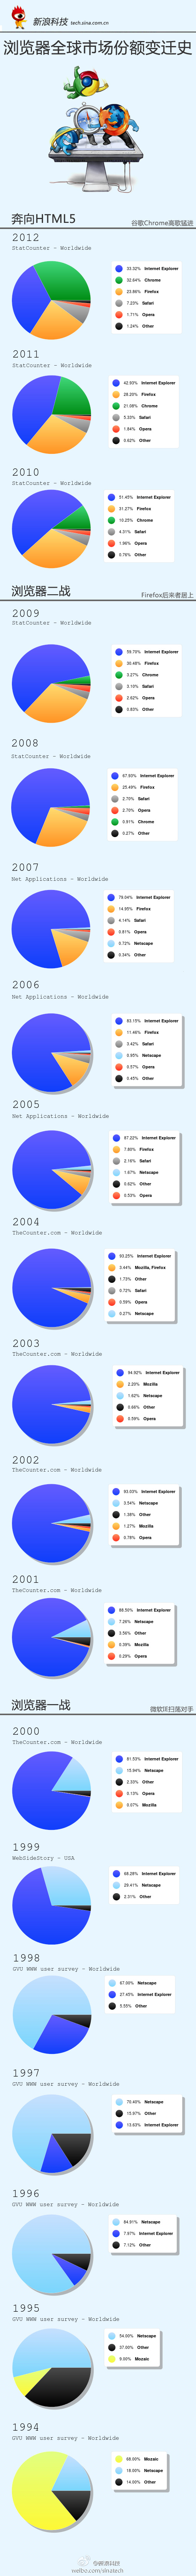 图表：全球浏览器市场份额变迁史